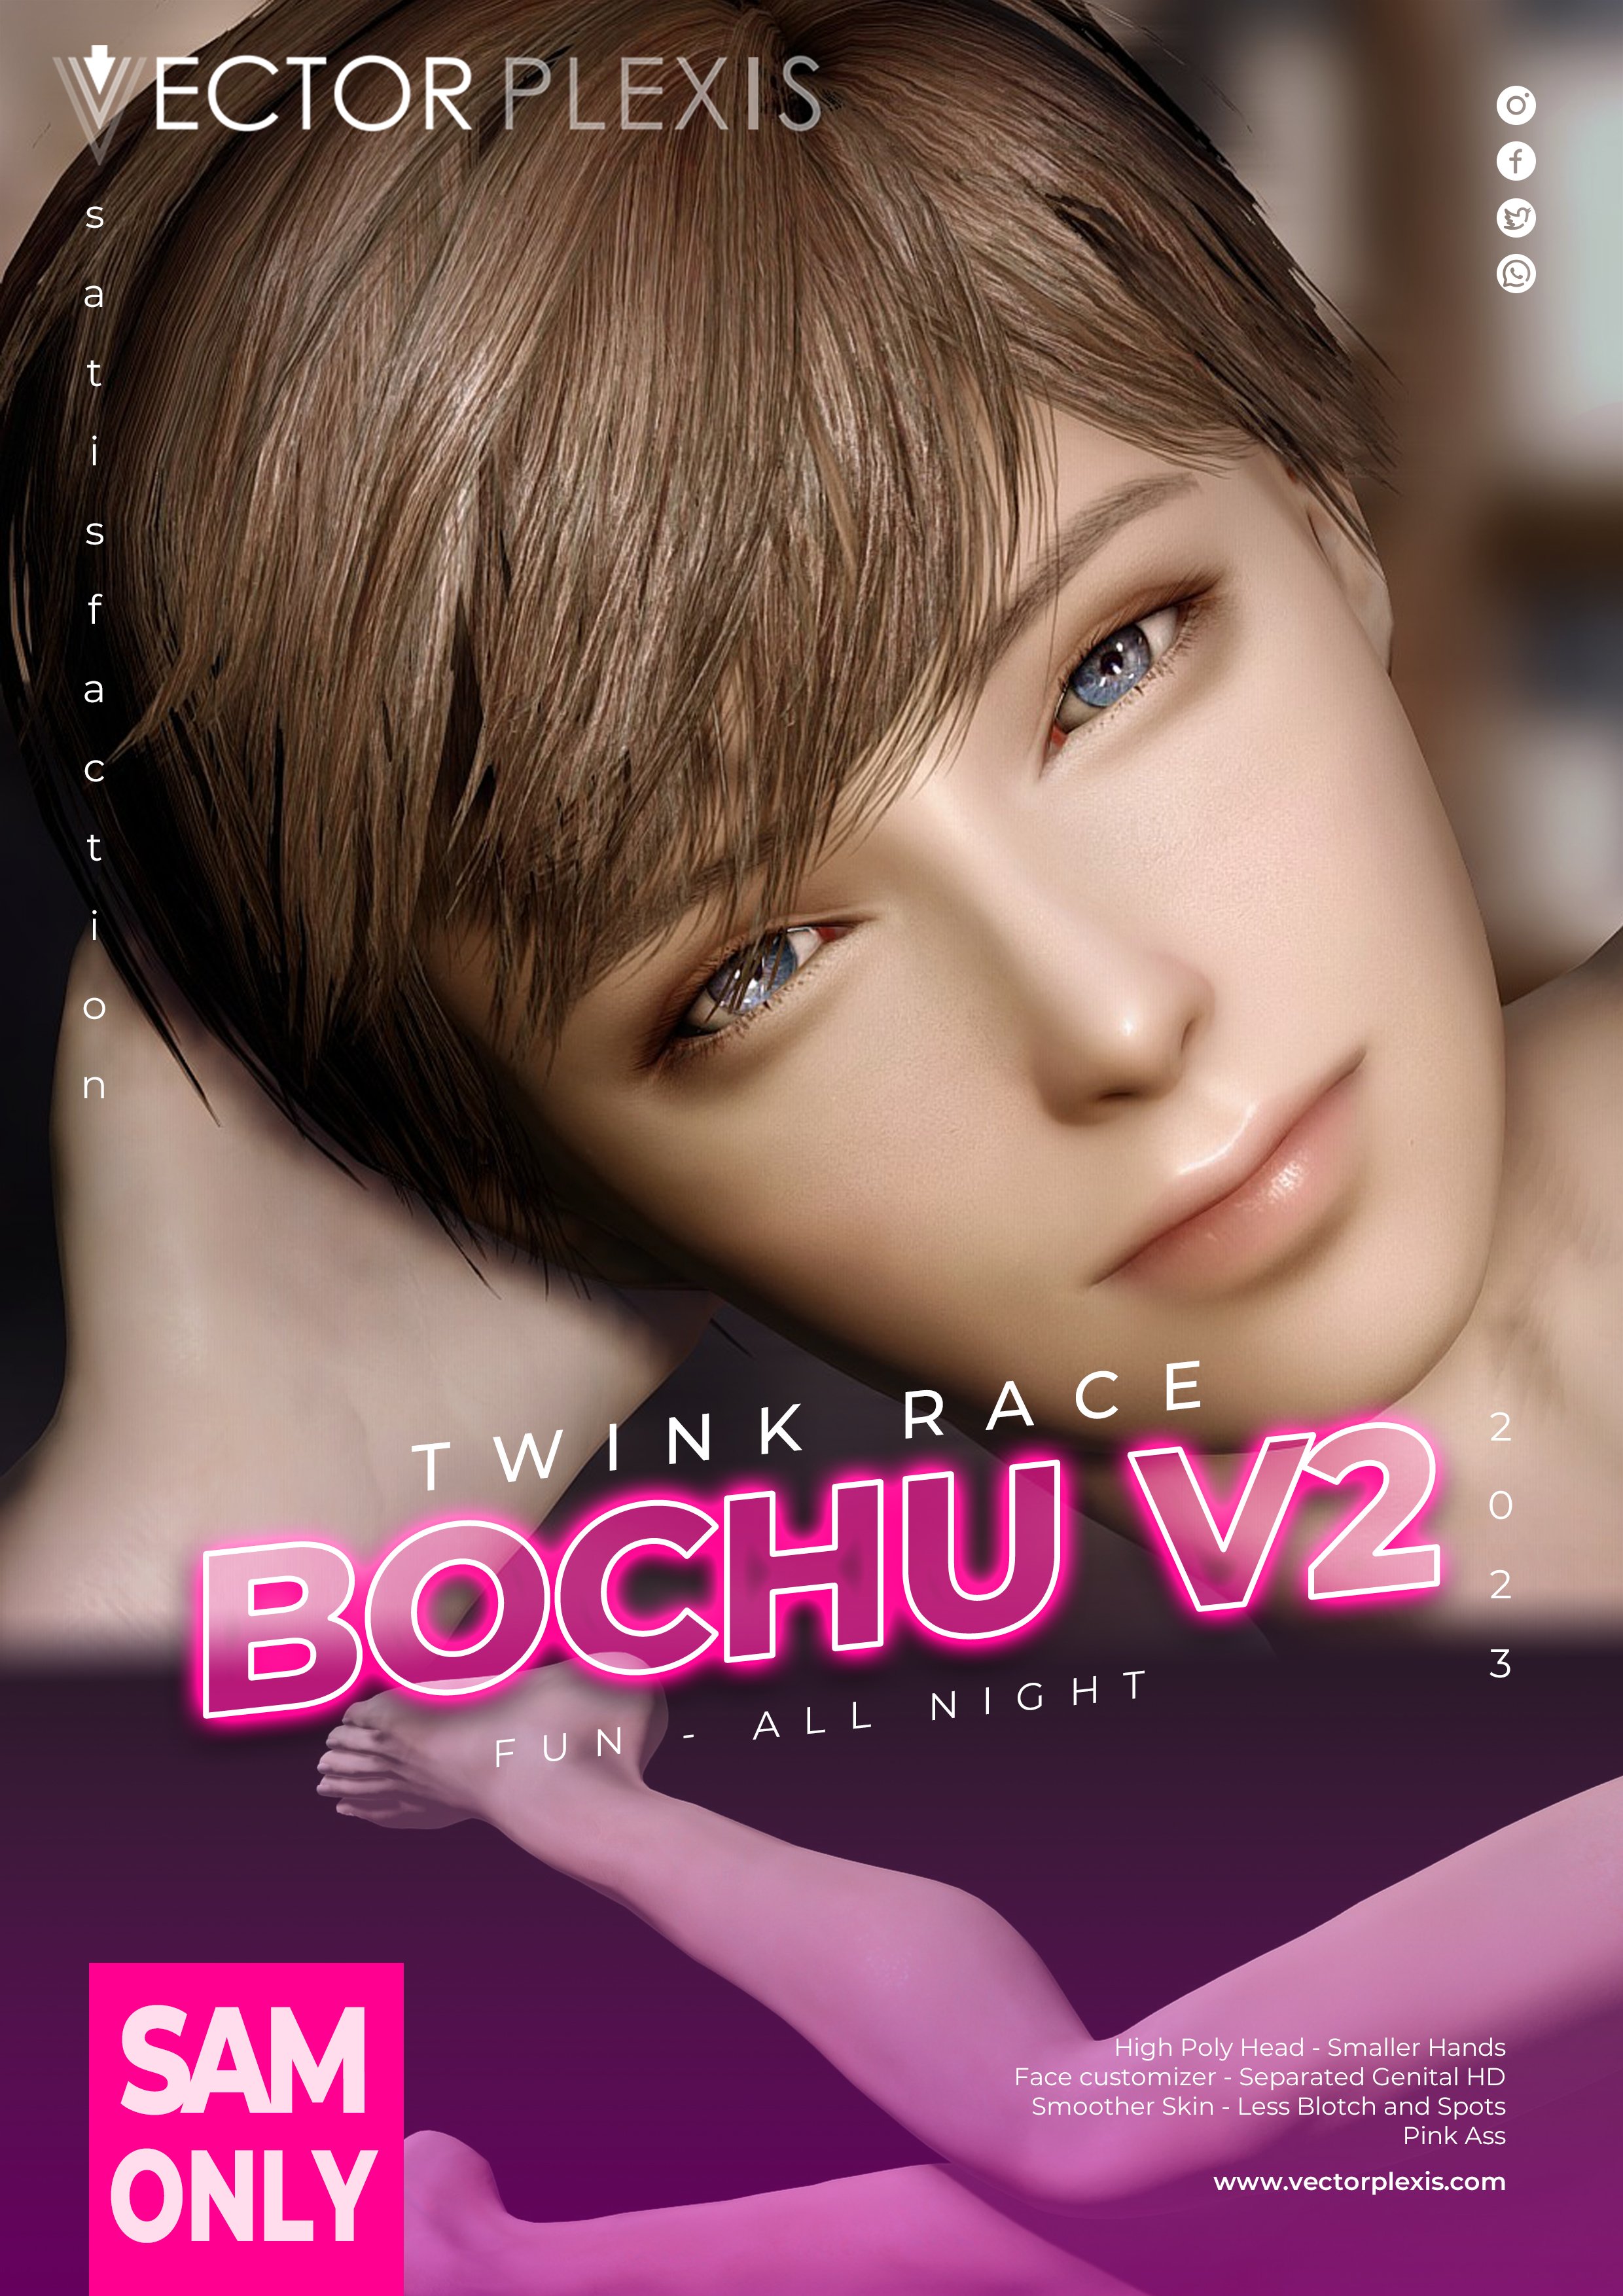 Bochu V2 Twink Race Alpha 1.02